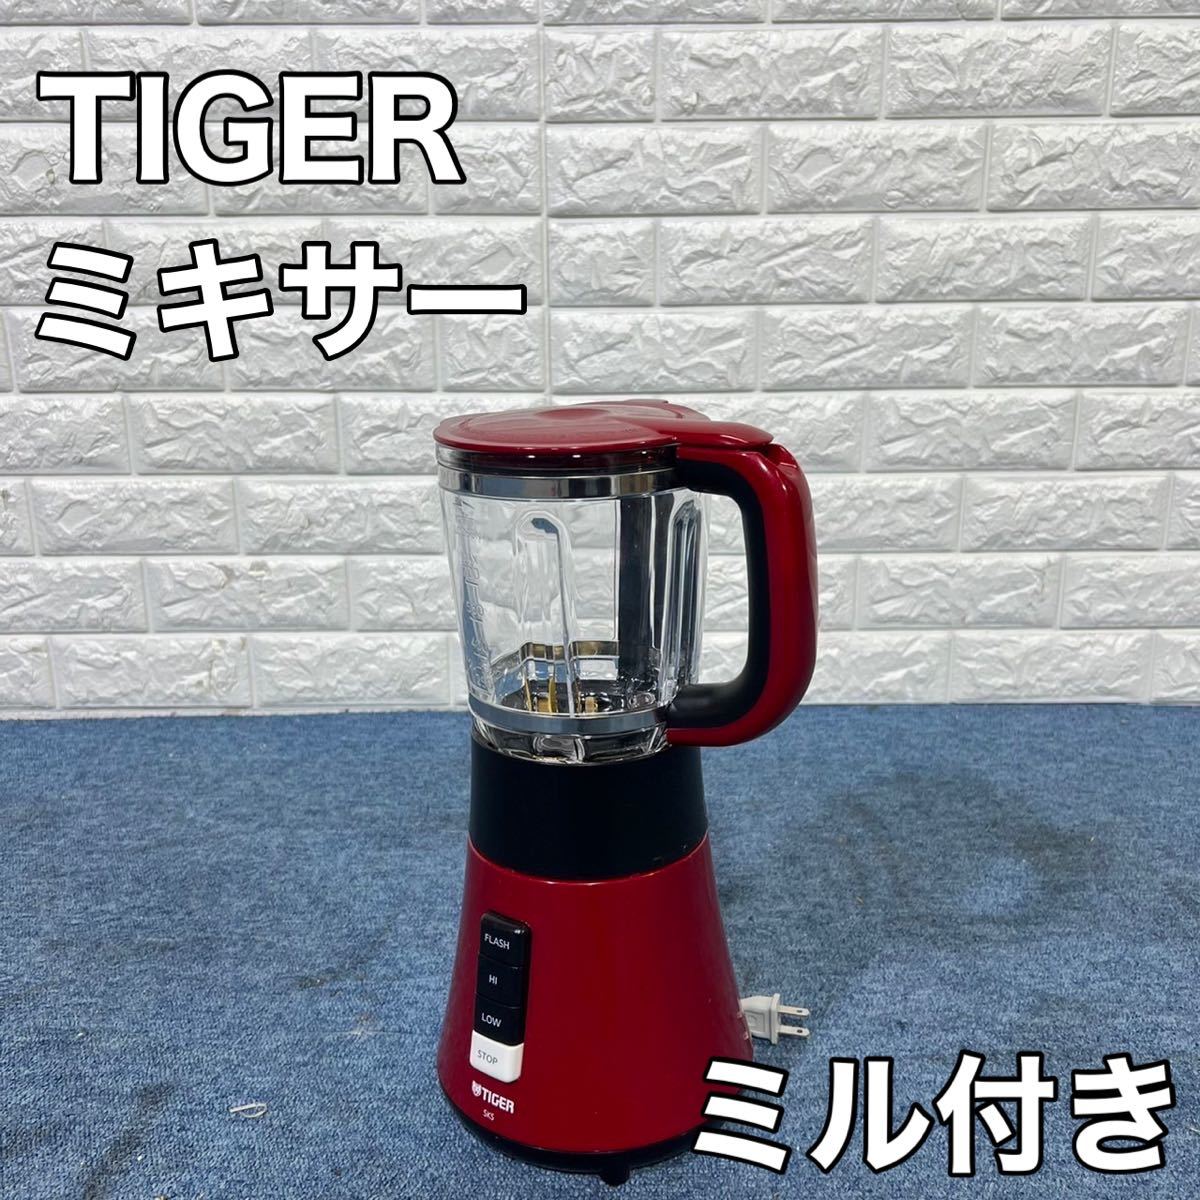 TIGER タイガー ミキサー SKS-A700 700ml ミル付き 家電 キッチン